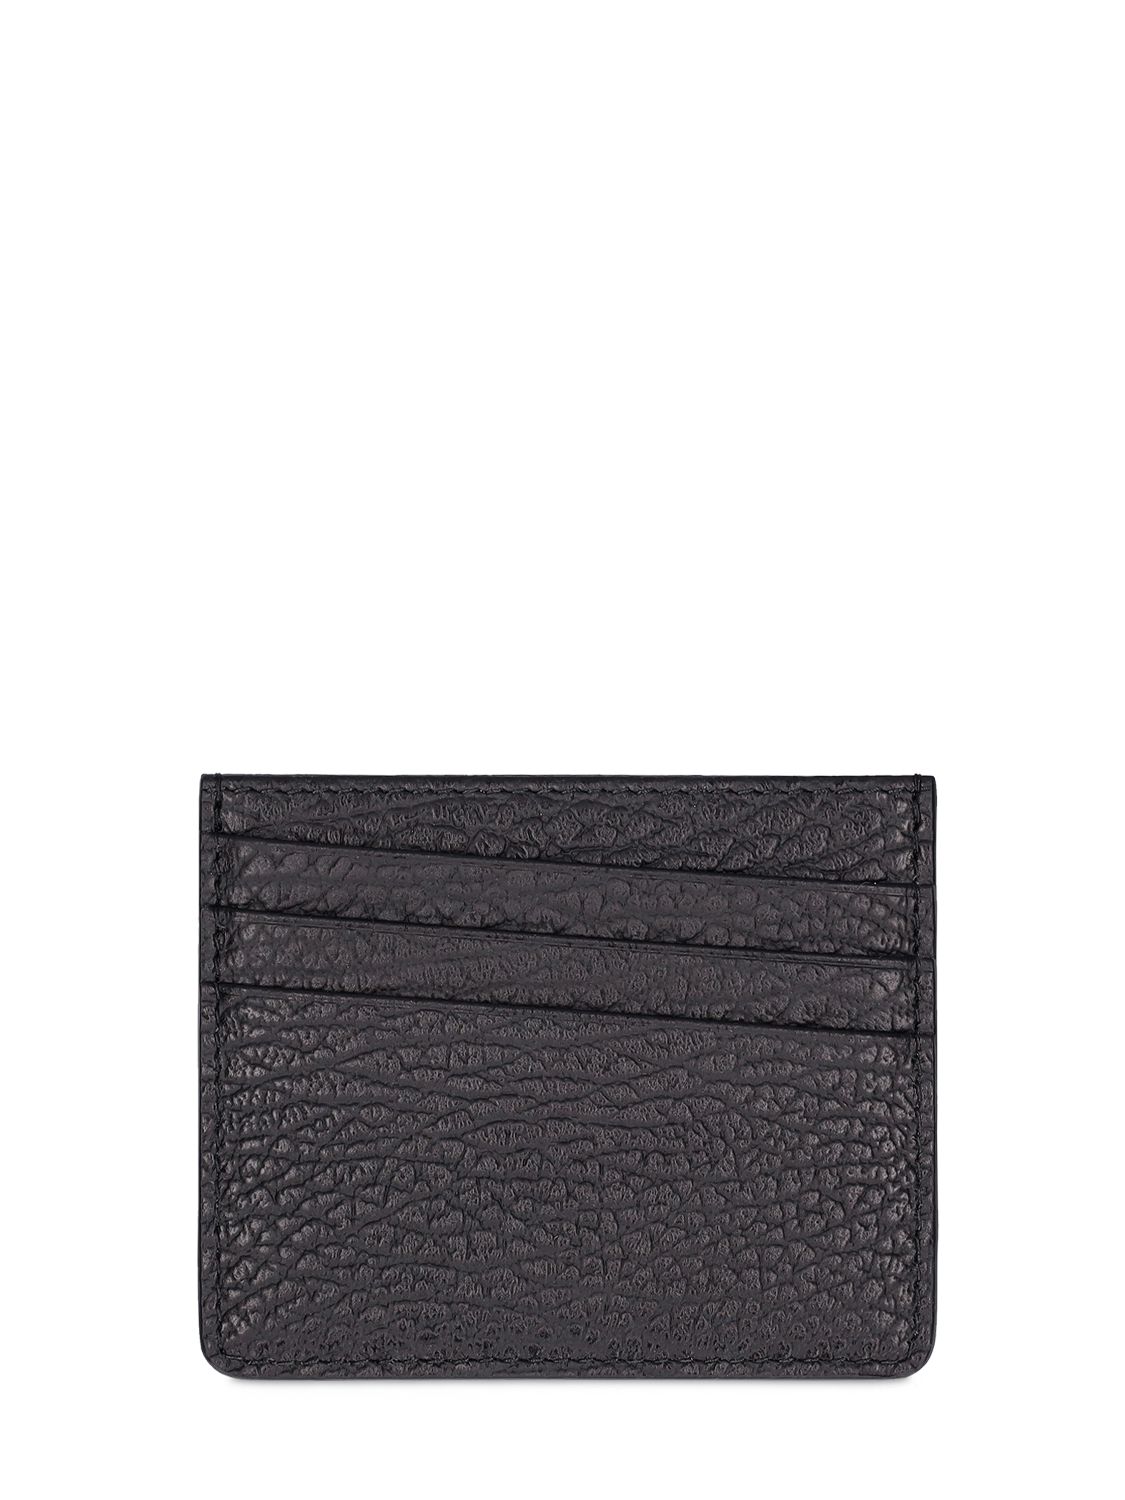 Grainy Leather 5 Card Holder - MAISON MARGIELA - Modalova